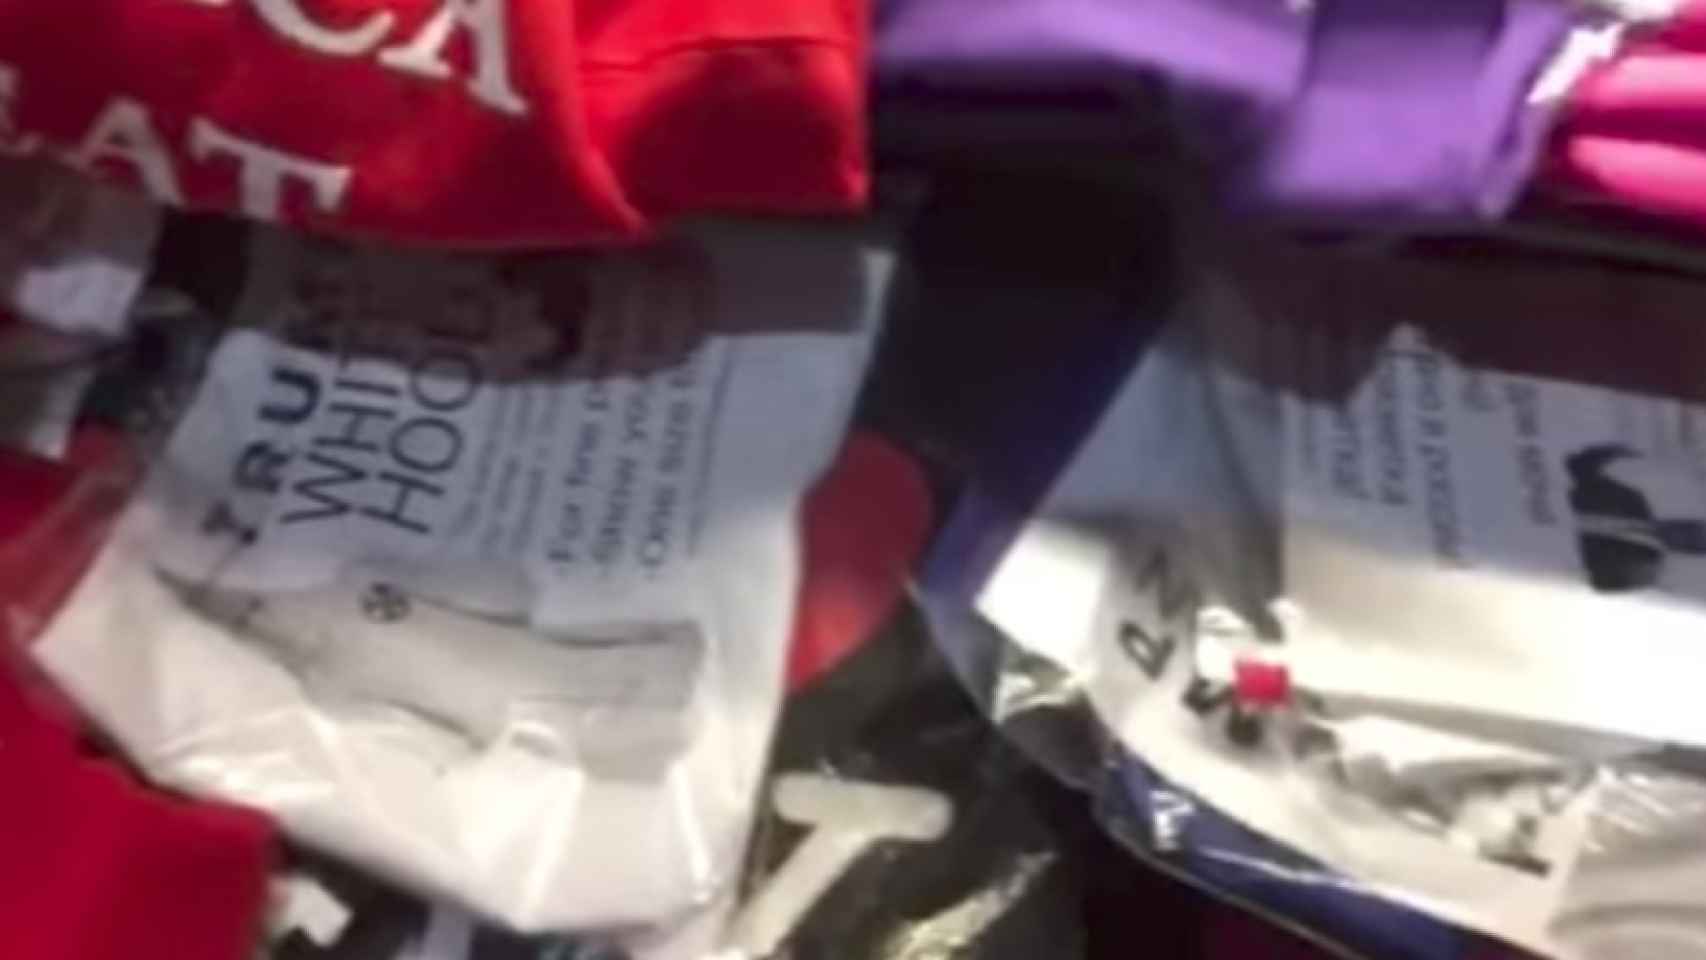 Capuchas del KKK entre el merchandising de Trump